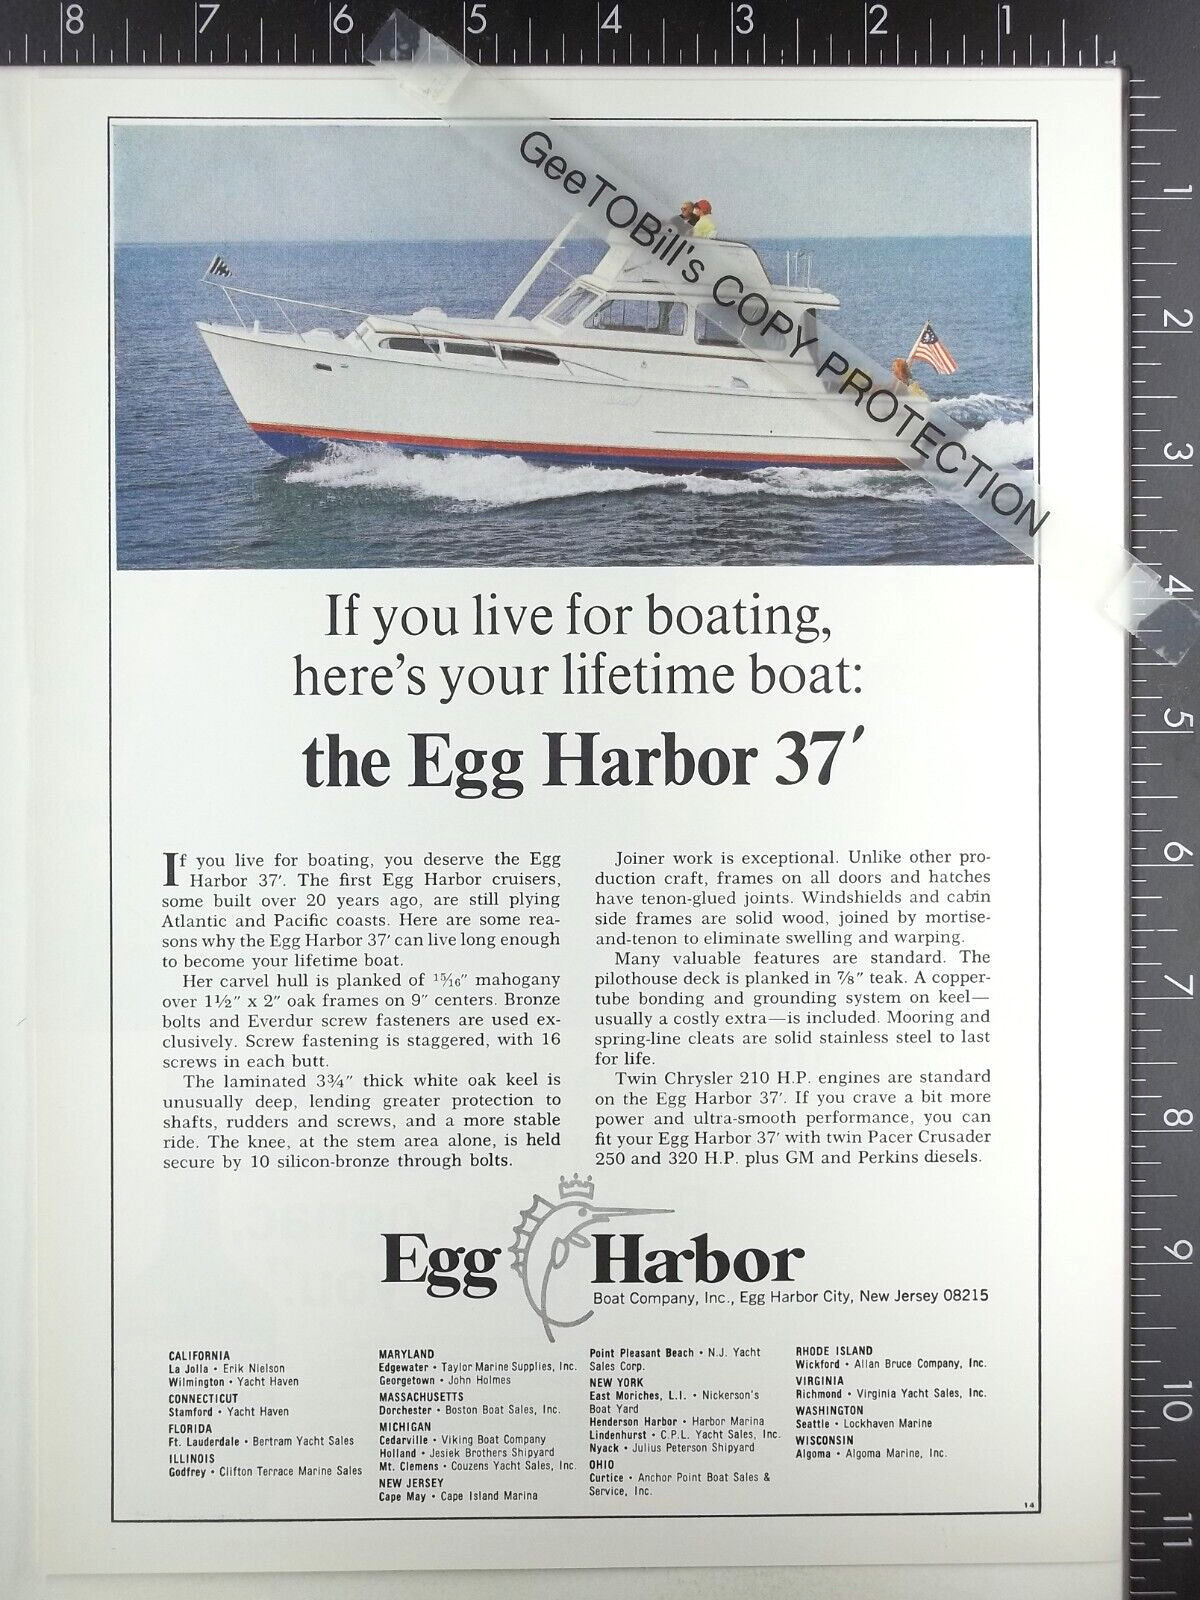 1967 ADVERTISING ADVERTISEMENT for Egg Harbor 37 boat motor yacht